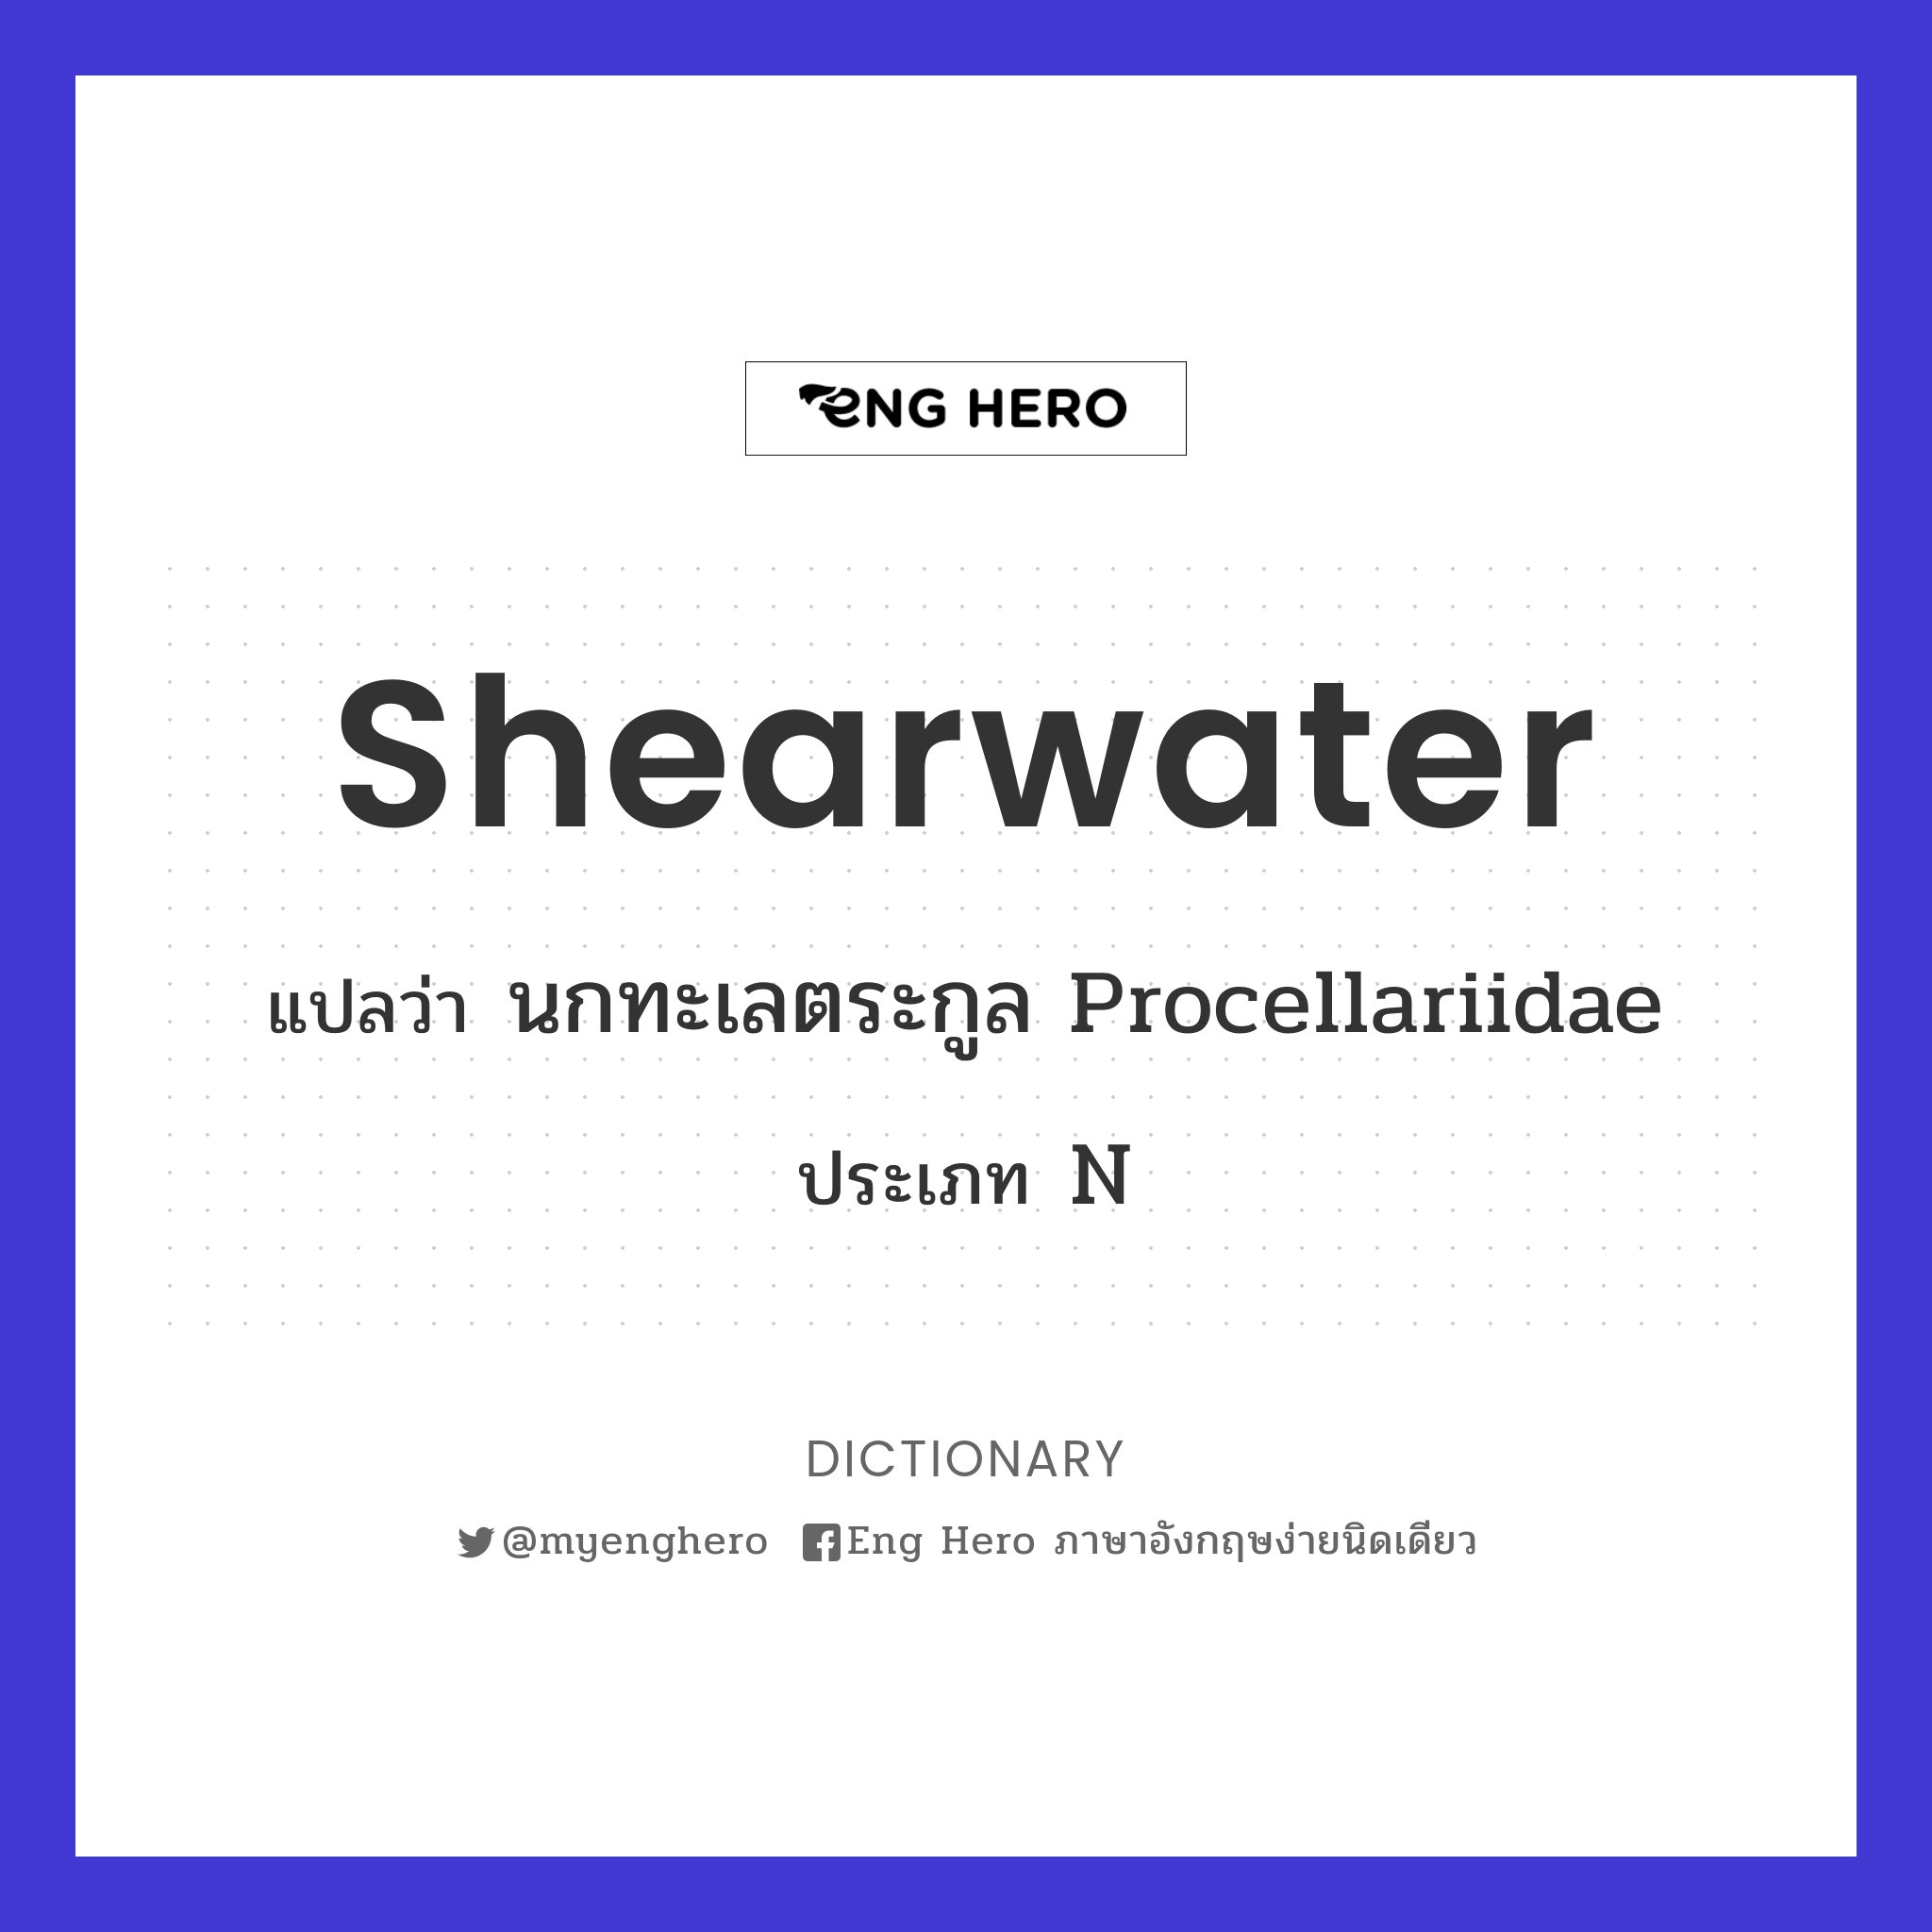 shearwater